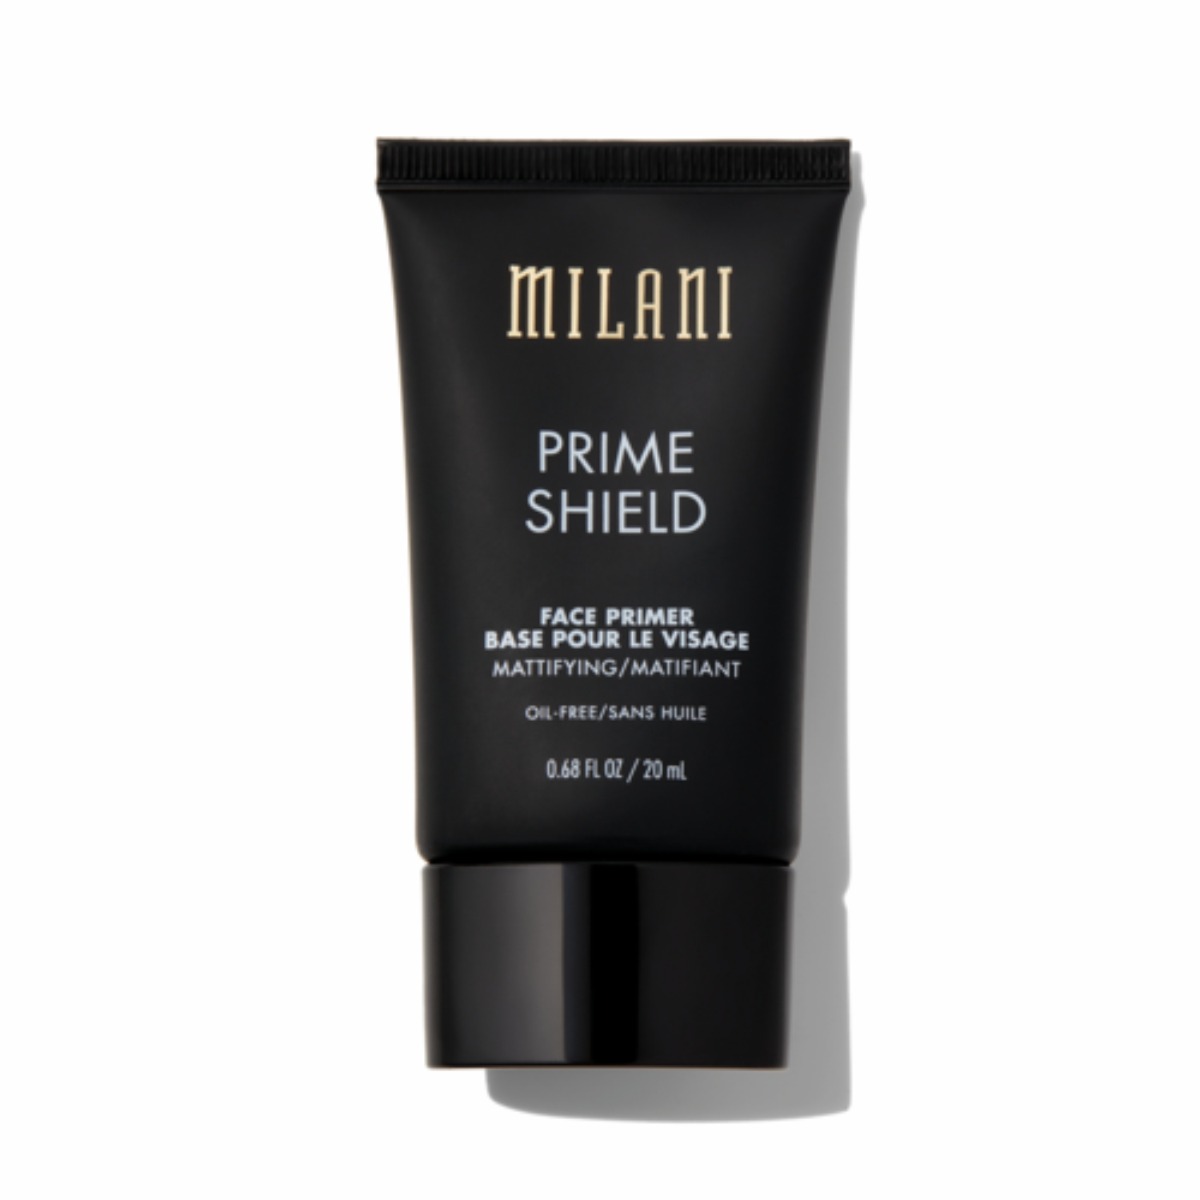 Milani Prime Shield Face Primer Mattifying & Pore-Minimizing